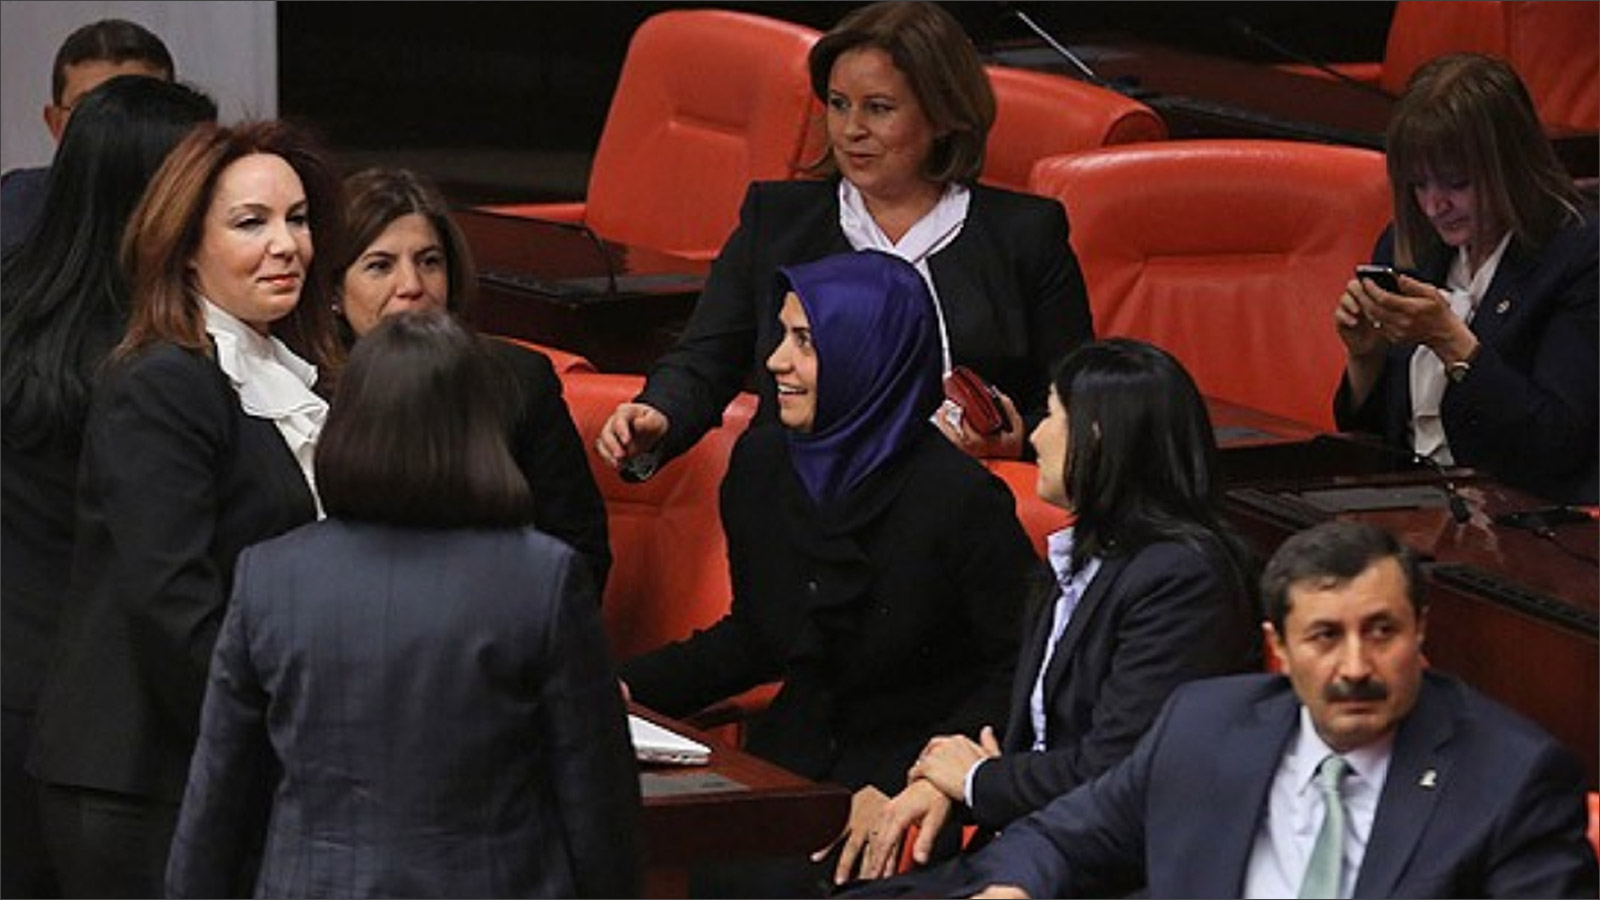 ‪المرأة التركية وصلت أيضا إلى البرلمان (الجزيرة)‬ المرأة التركية وصلت أيضا إلى البرلمان (الجزيرة)